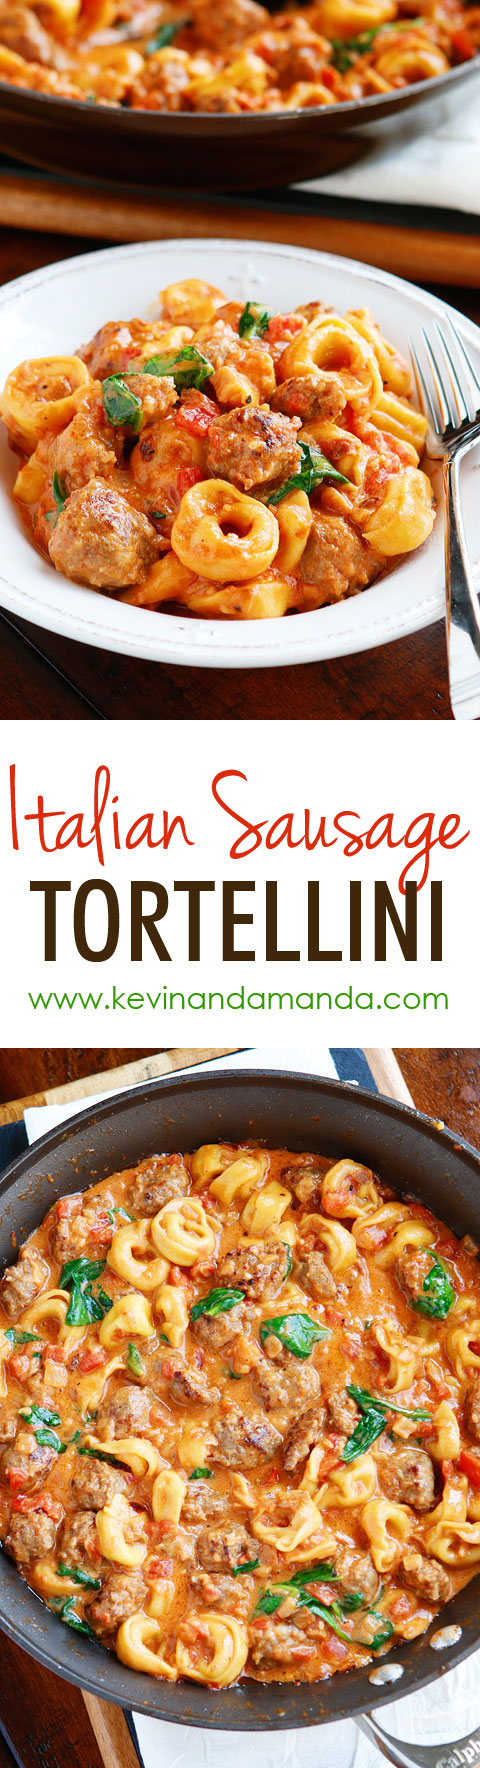 Best Tortellini Recipes: Italian Sausage Tortellini